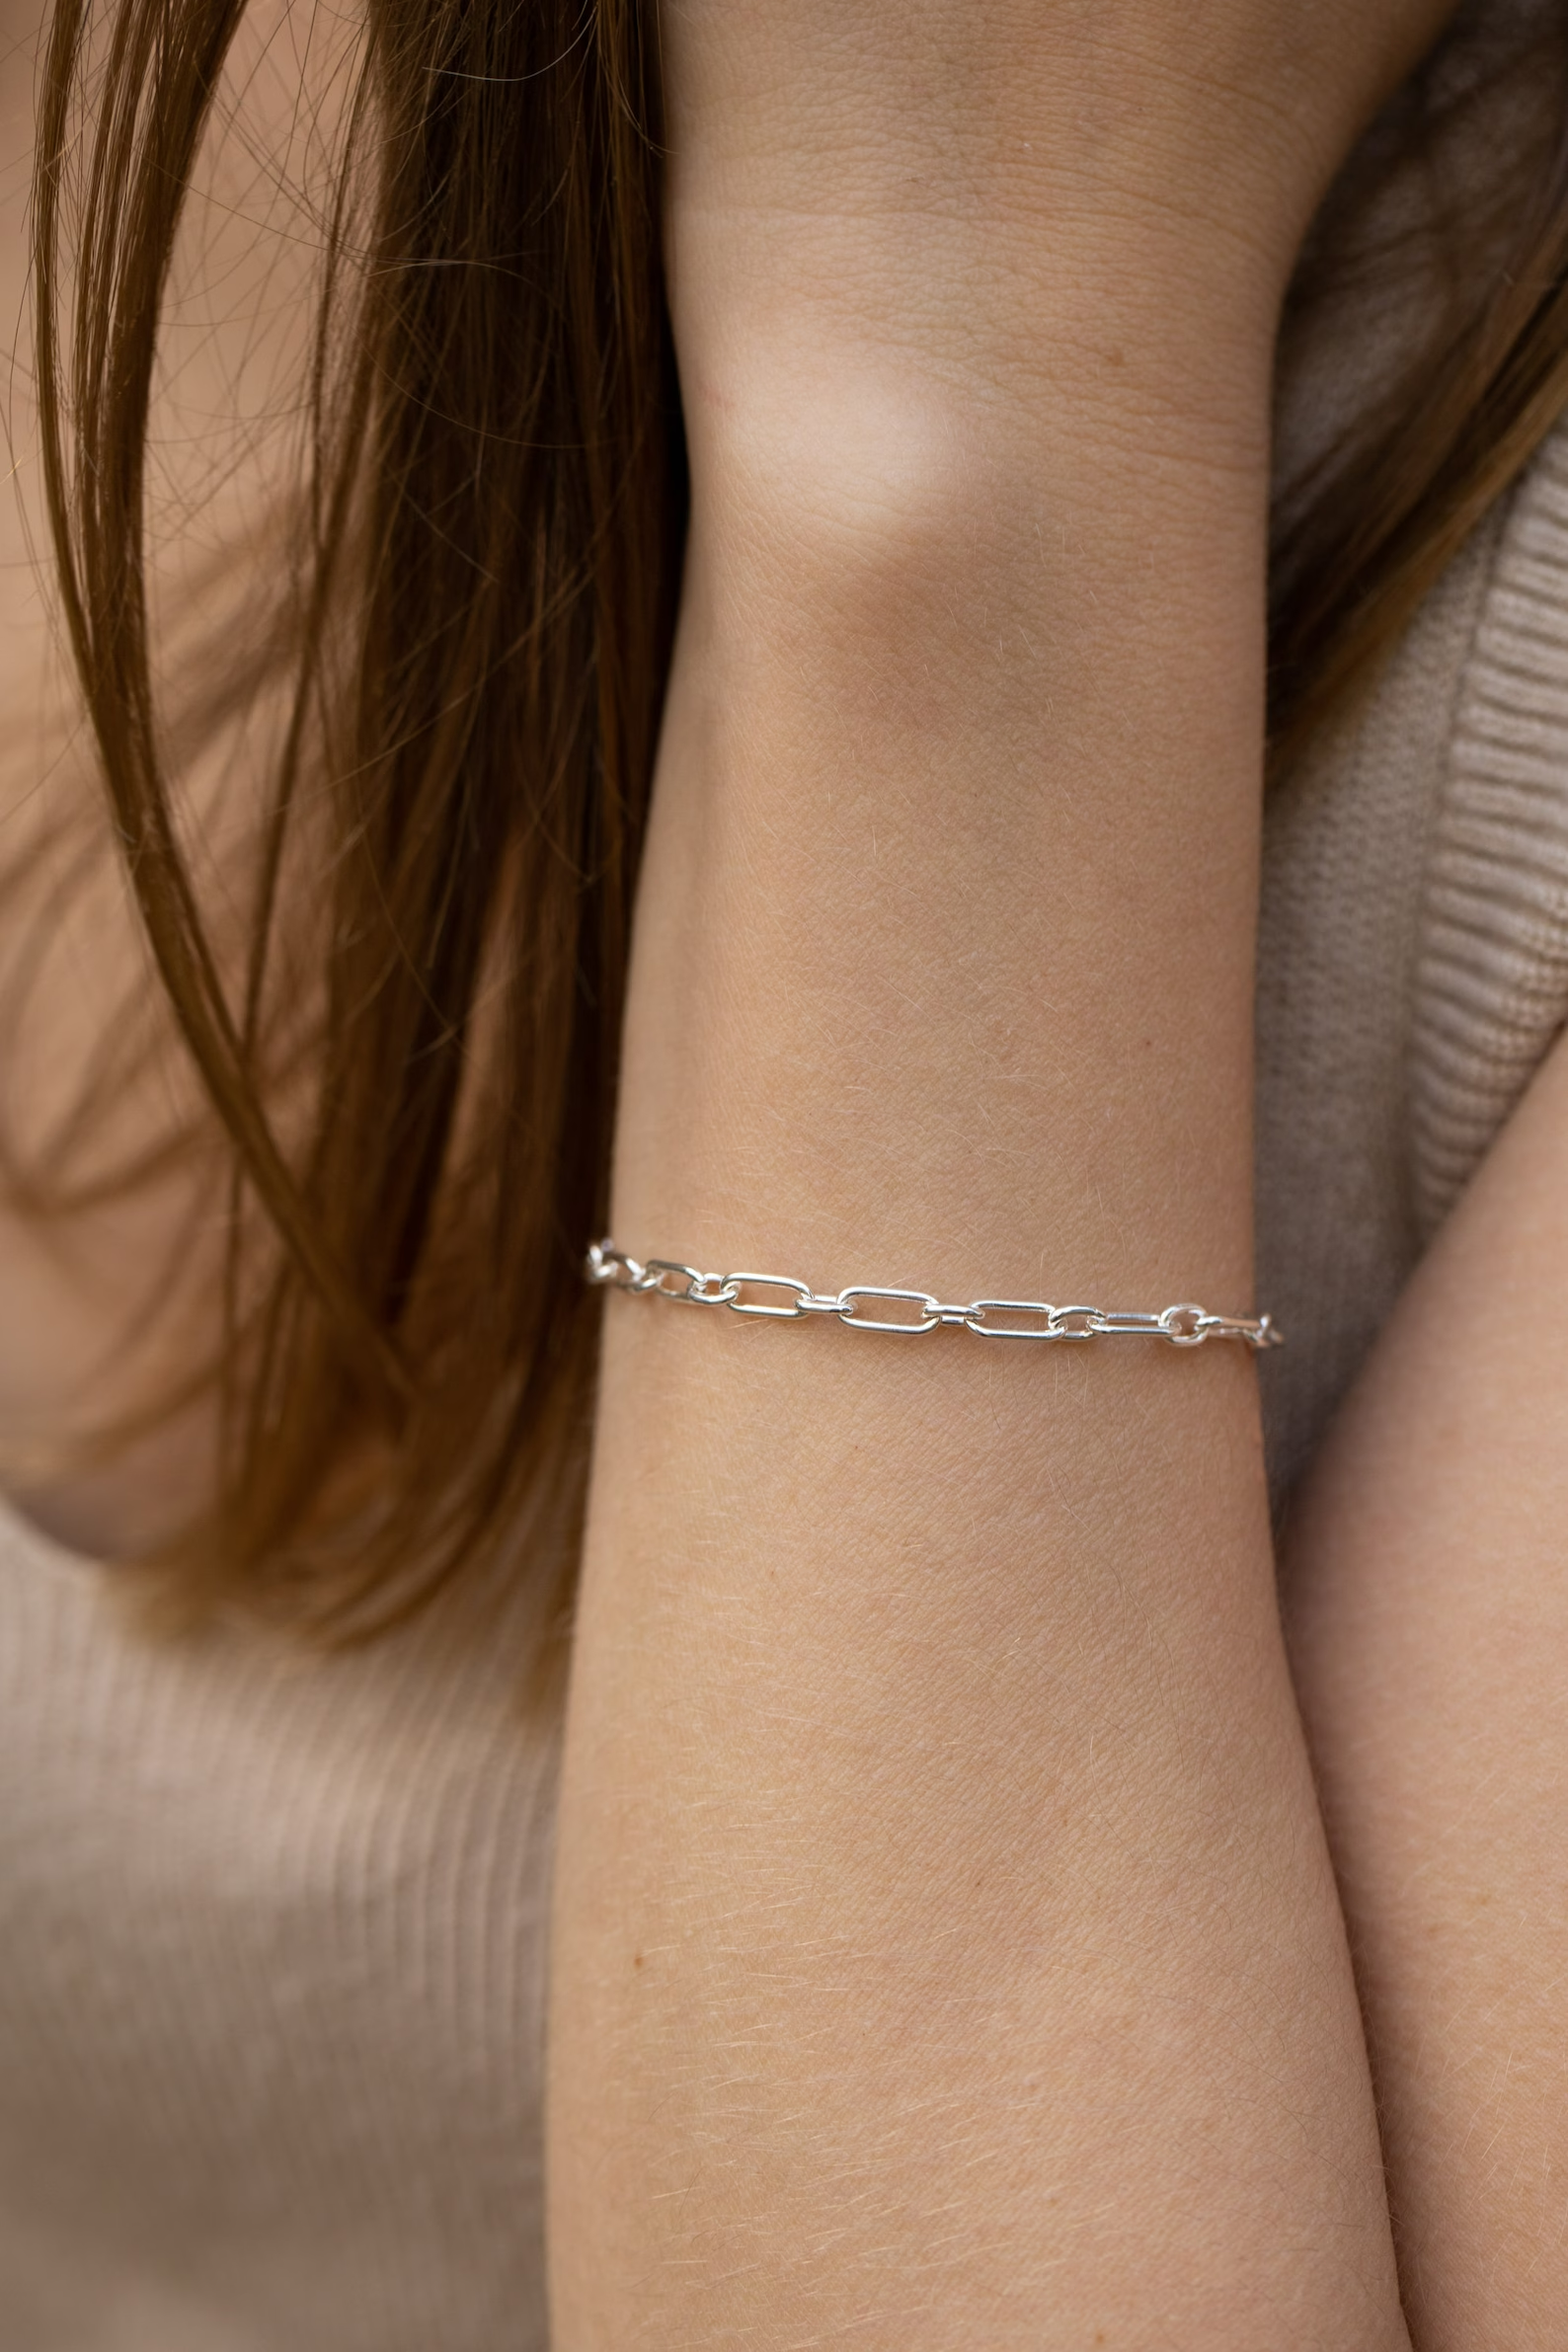 Jewelgenics Bracelet for Women and Girls | Fashion Silver Hanging Charm  Bracelets for Women and Girls